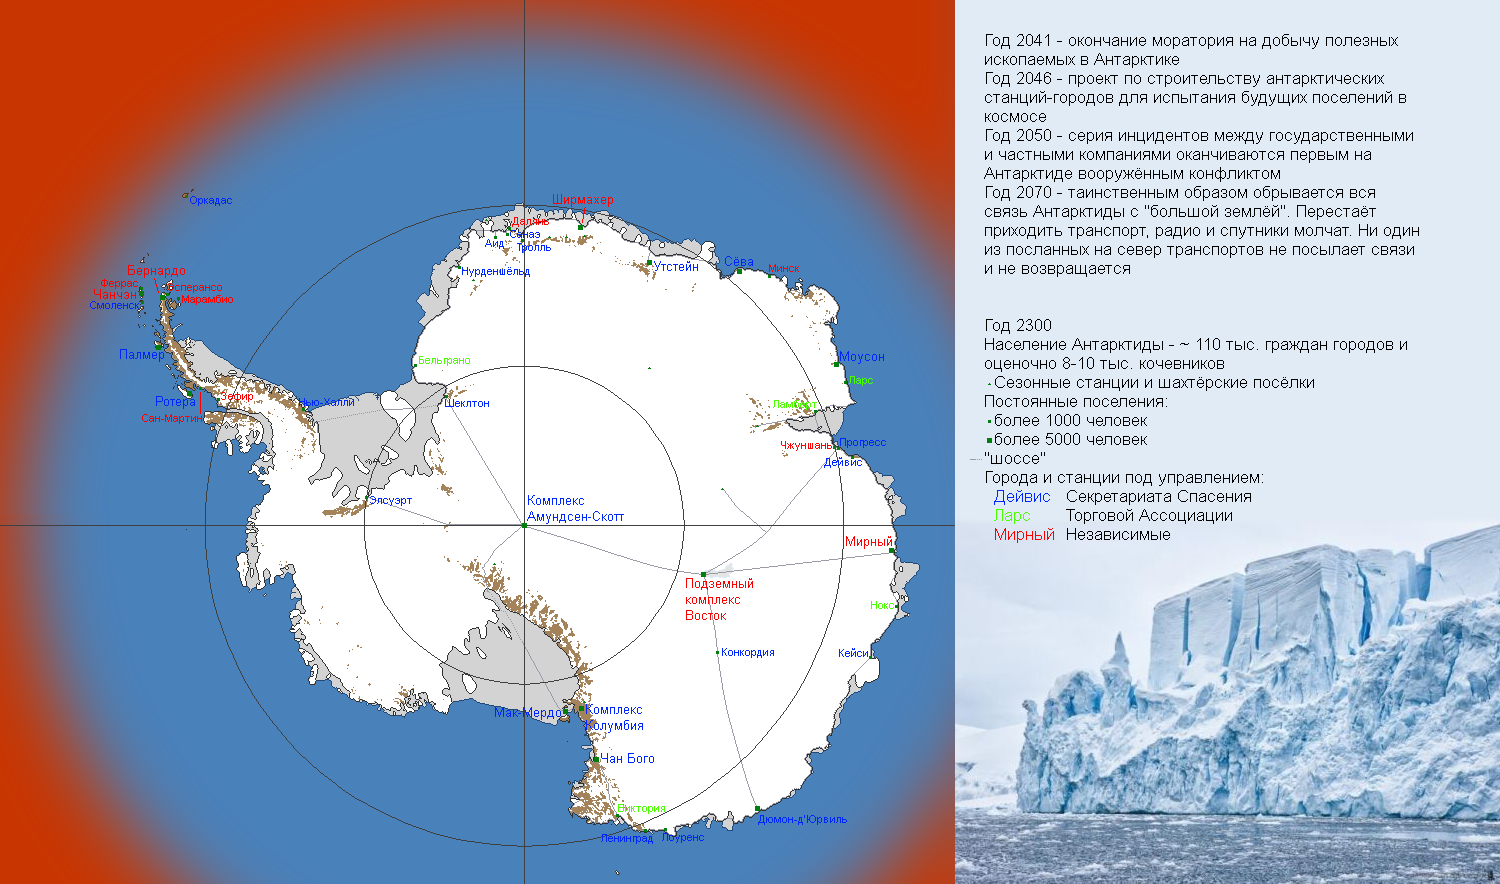 Название антарктических станций. Станция Амундсен Скотт в Антарктиде на карте. Амундсен-Скотт на карте Антарктиды. Полярная станция Амундсен-Скотт на карте Антарктиды. Станции в Антарктиде на карте.